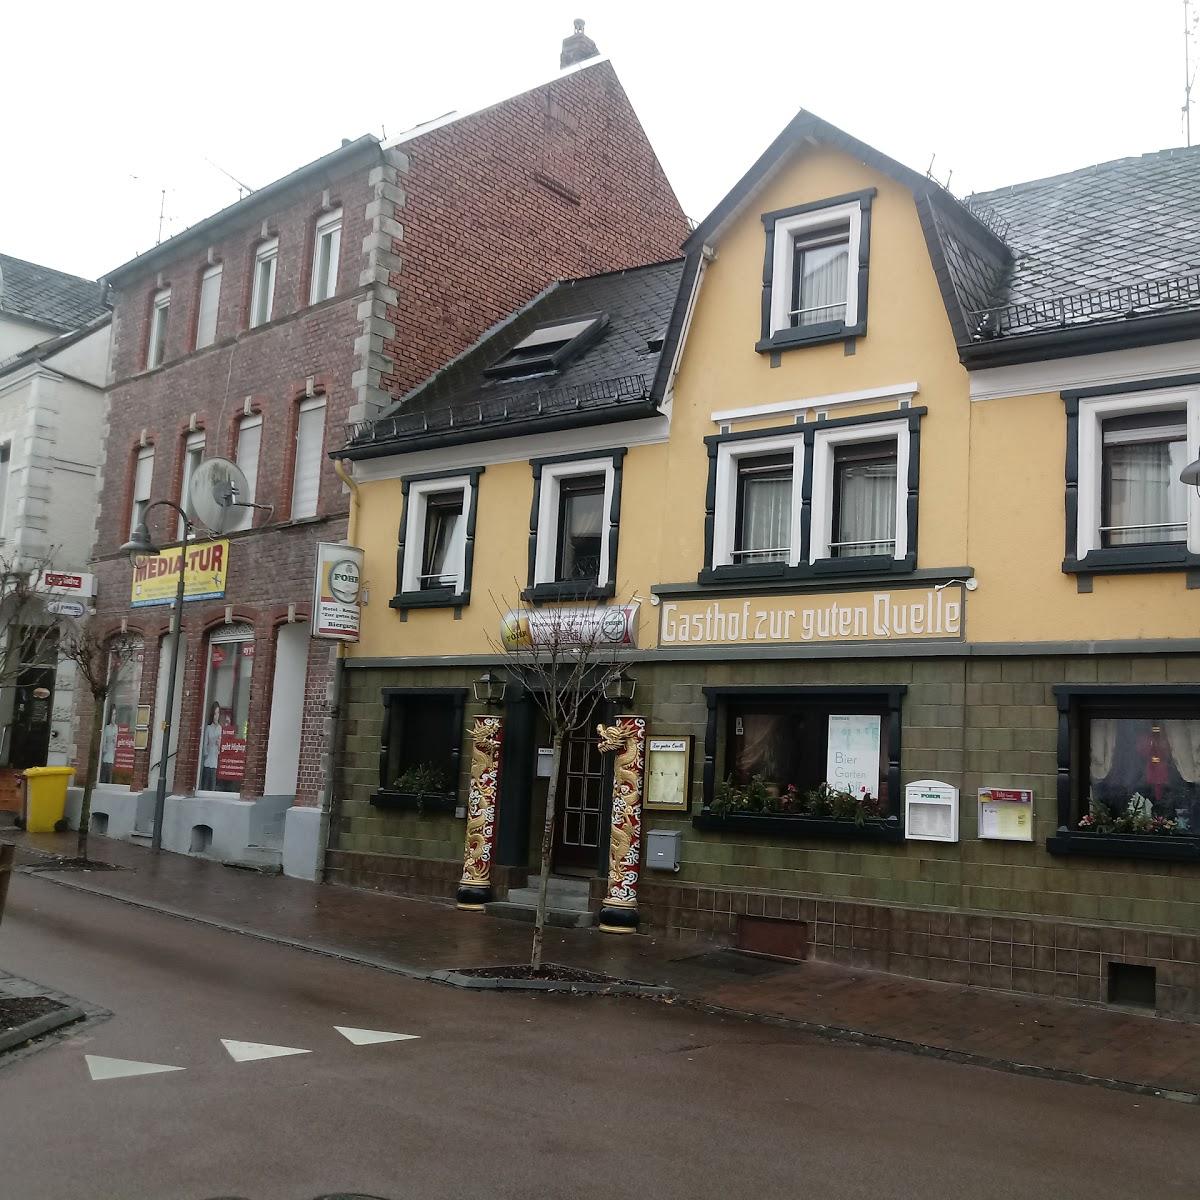 Restaurant "Hotel Zur Guten Quelle" in  Selters(Westerwald)